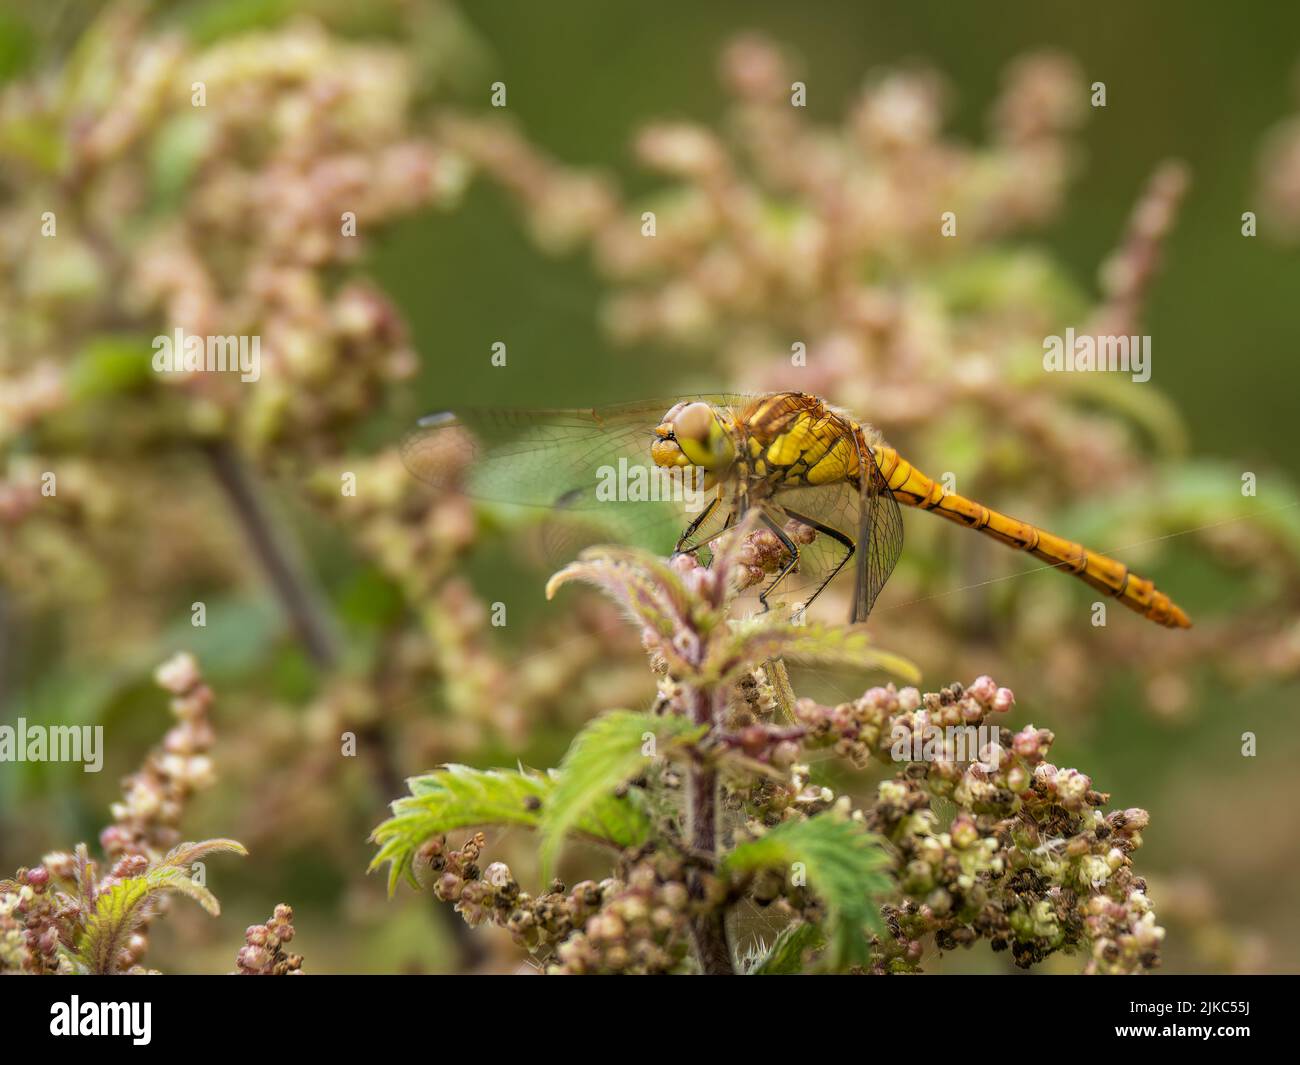 Femenino de libélula común de Darter también conocida como Sympetrum striolatum, perfil, descansando sobre la ortiga. Foto de stock